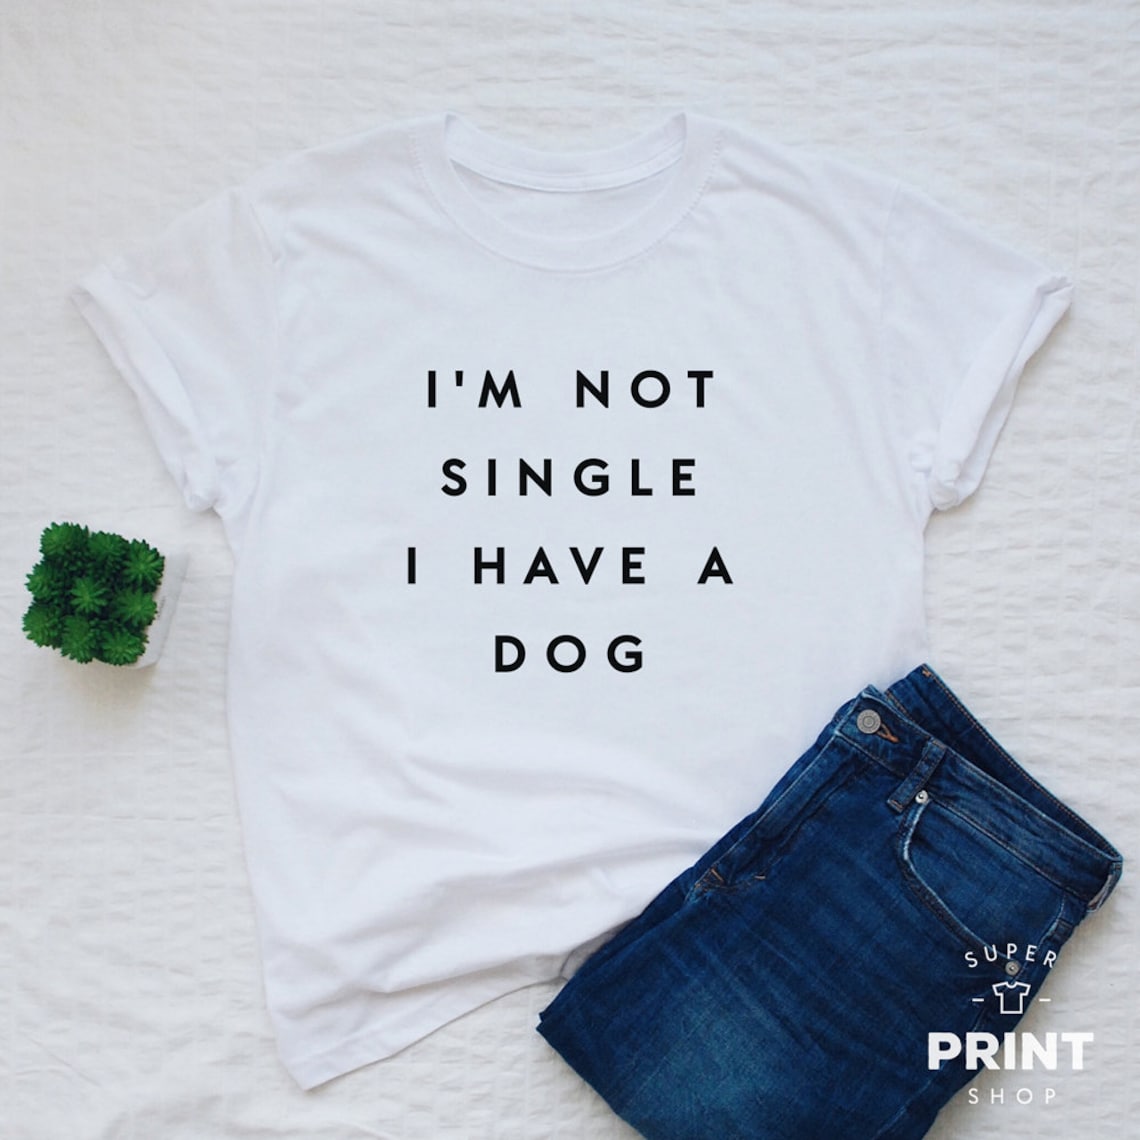 Funny dog shirt, I'm not single I have a dog shirt